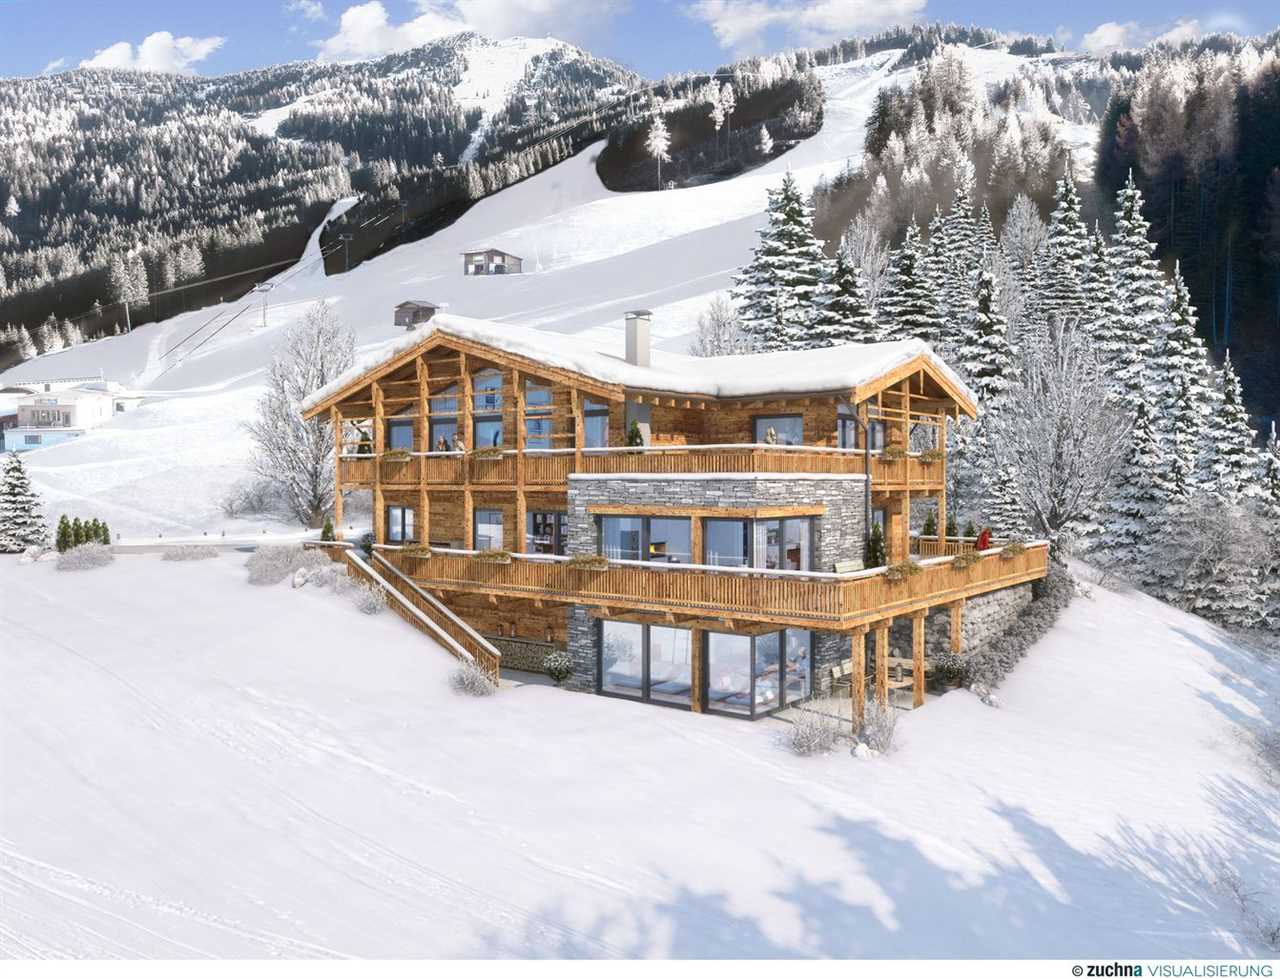 Urlaub in den Alpen Luxus Chalets kaufen und die Natur genießen